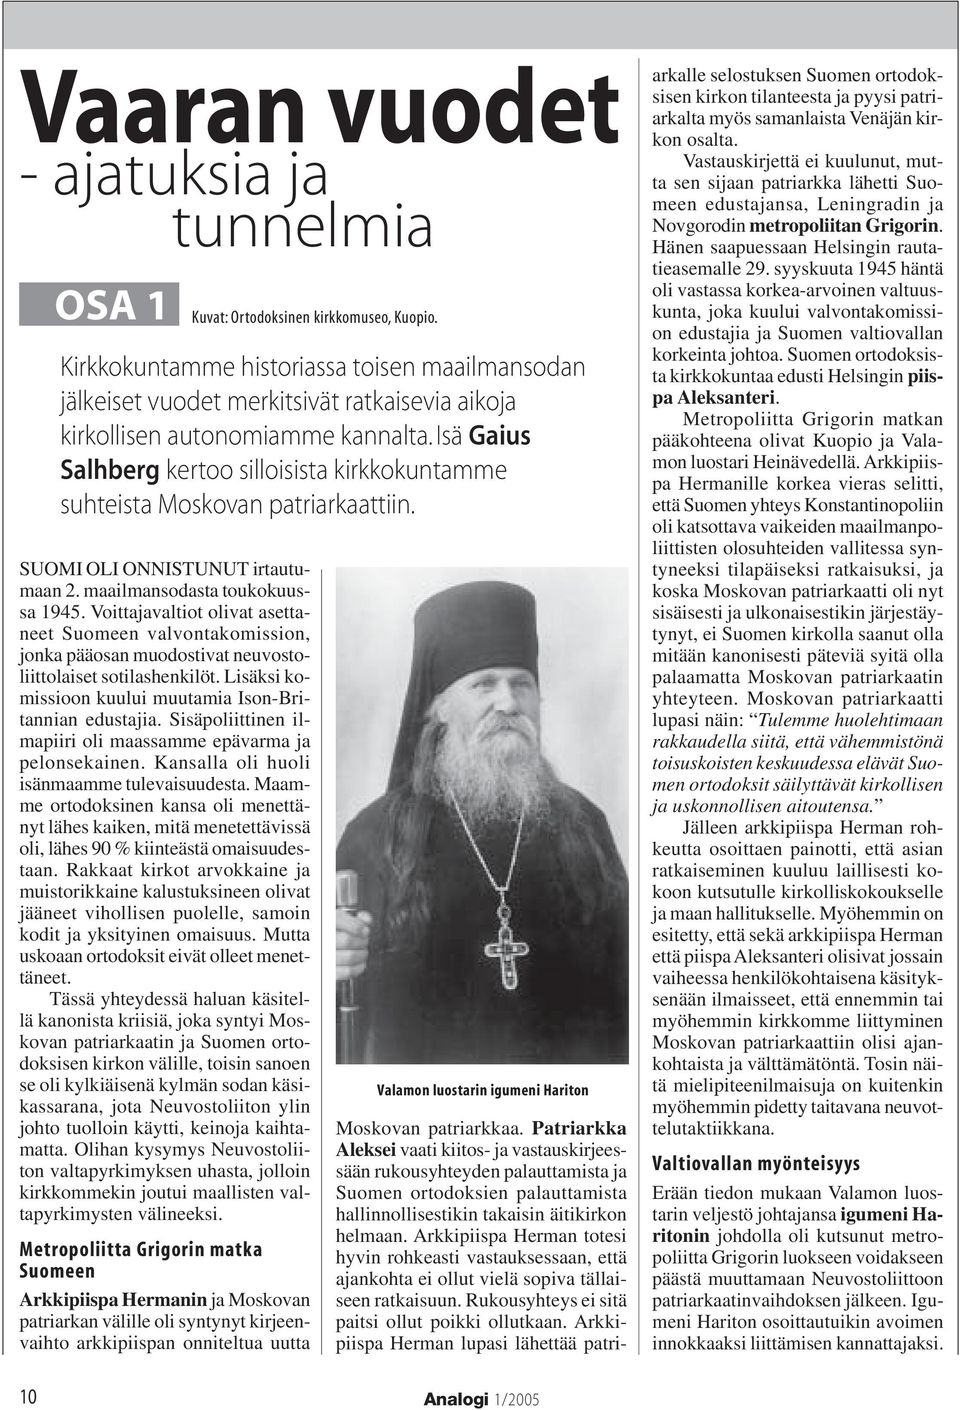 Isä Gaius Salhberg kertoo silloisista kirkkokuntamme suhteista Moskovan patriarkaattiin. SUOMI OLI ONNISTUNUT irtautumaan 2. maailmansodasta toukokuussa 1945.